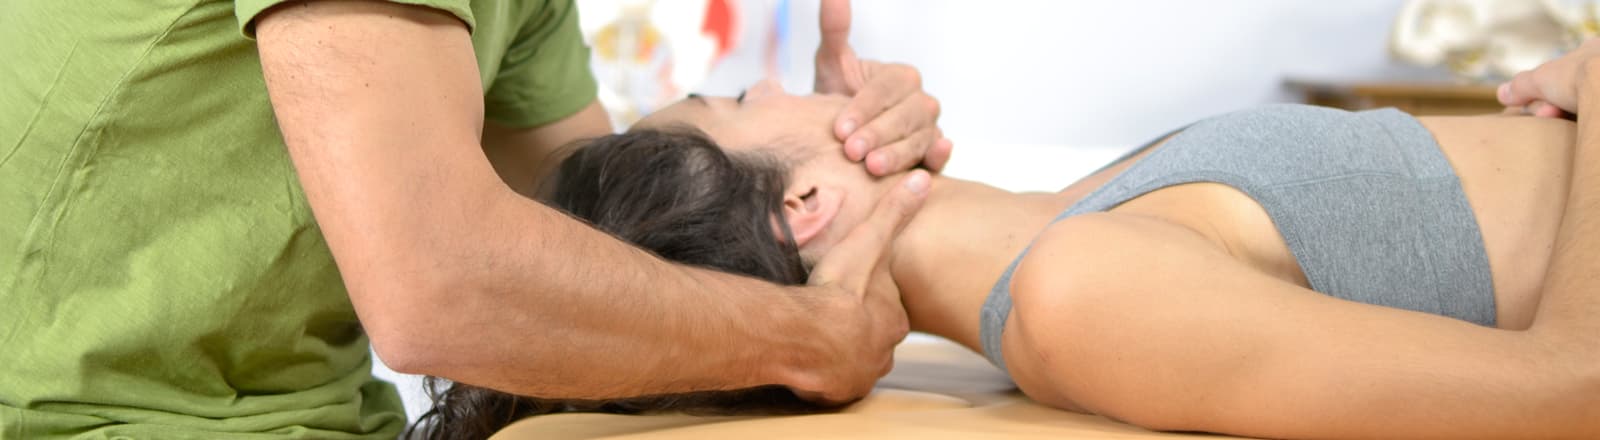 masaje terapeutico bilbao 